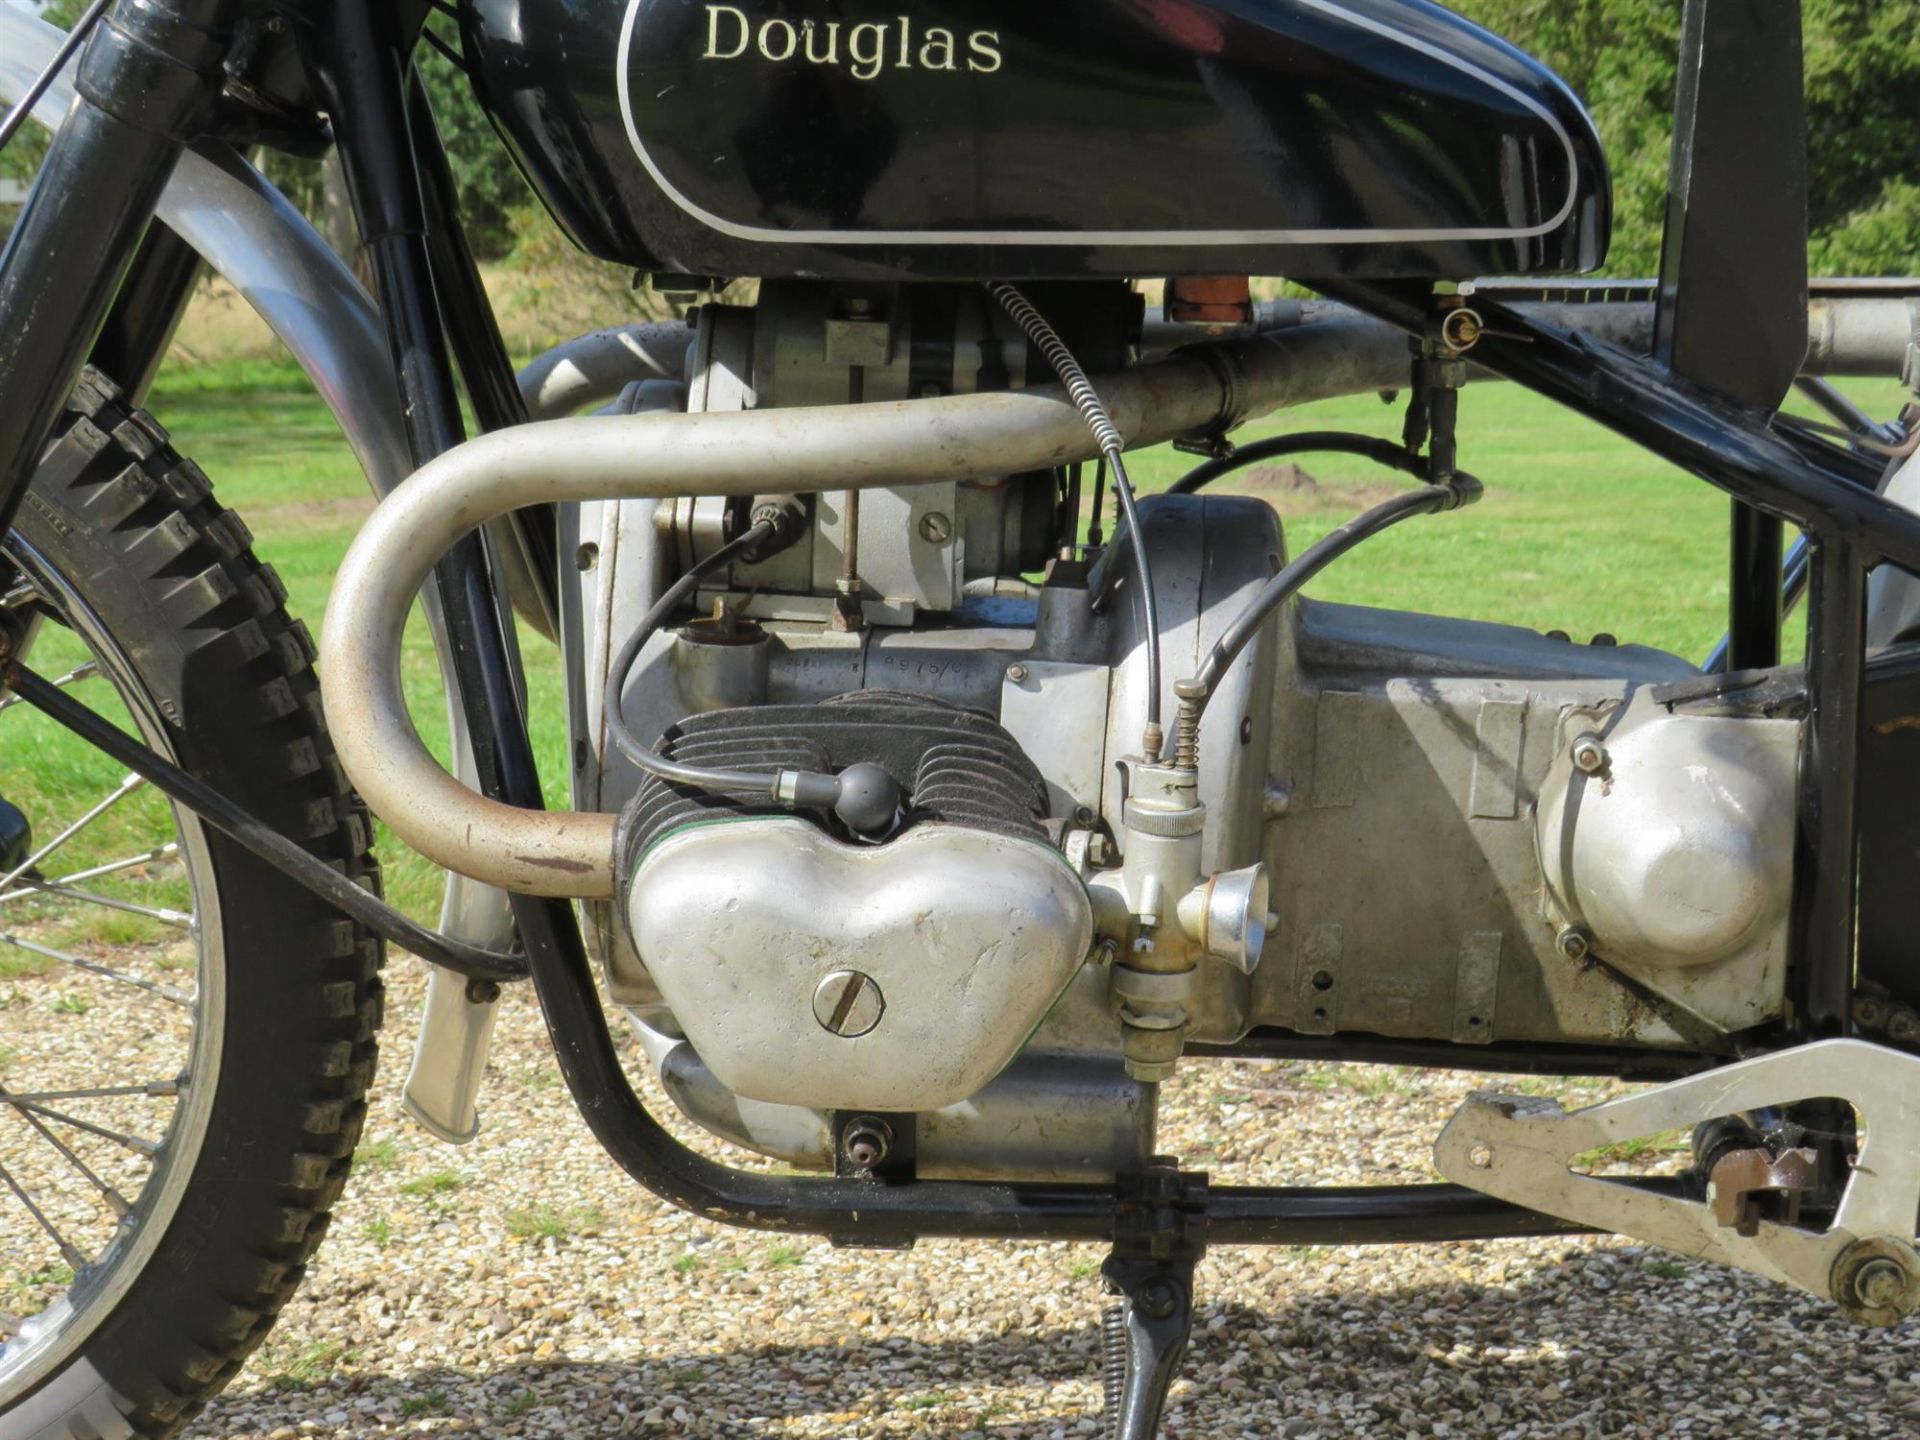 1950 Douglas 350 Trials Replica 348cc - Image 4 of 10